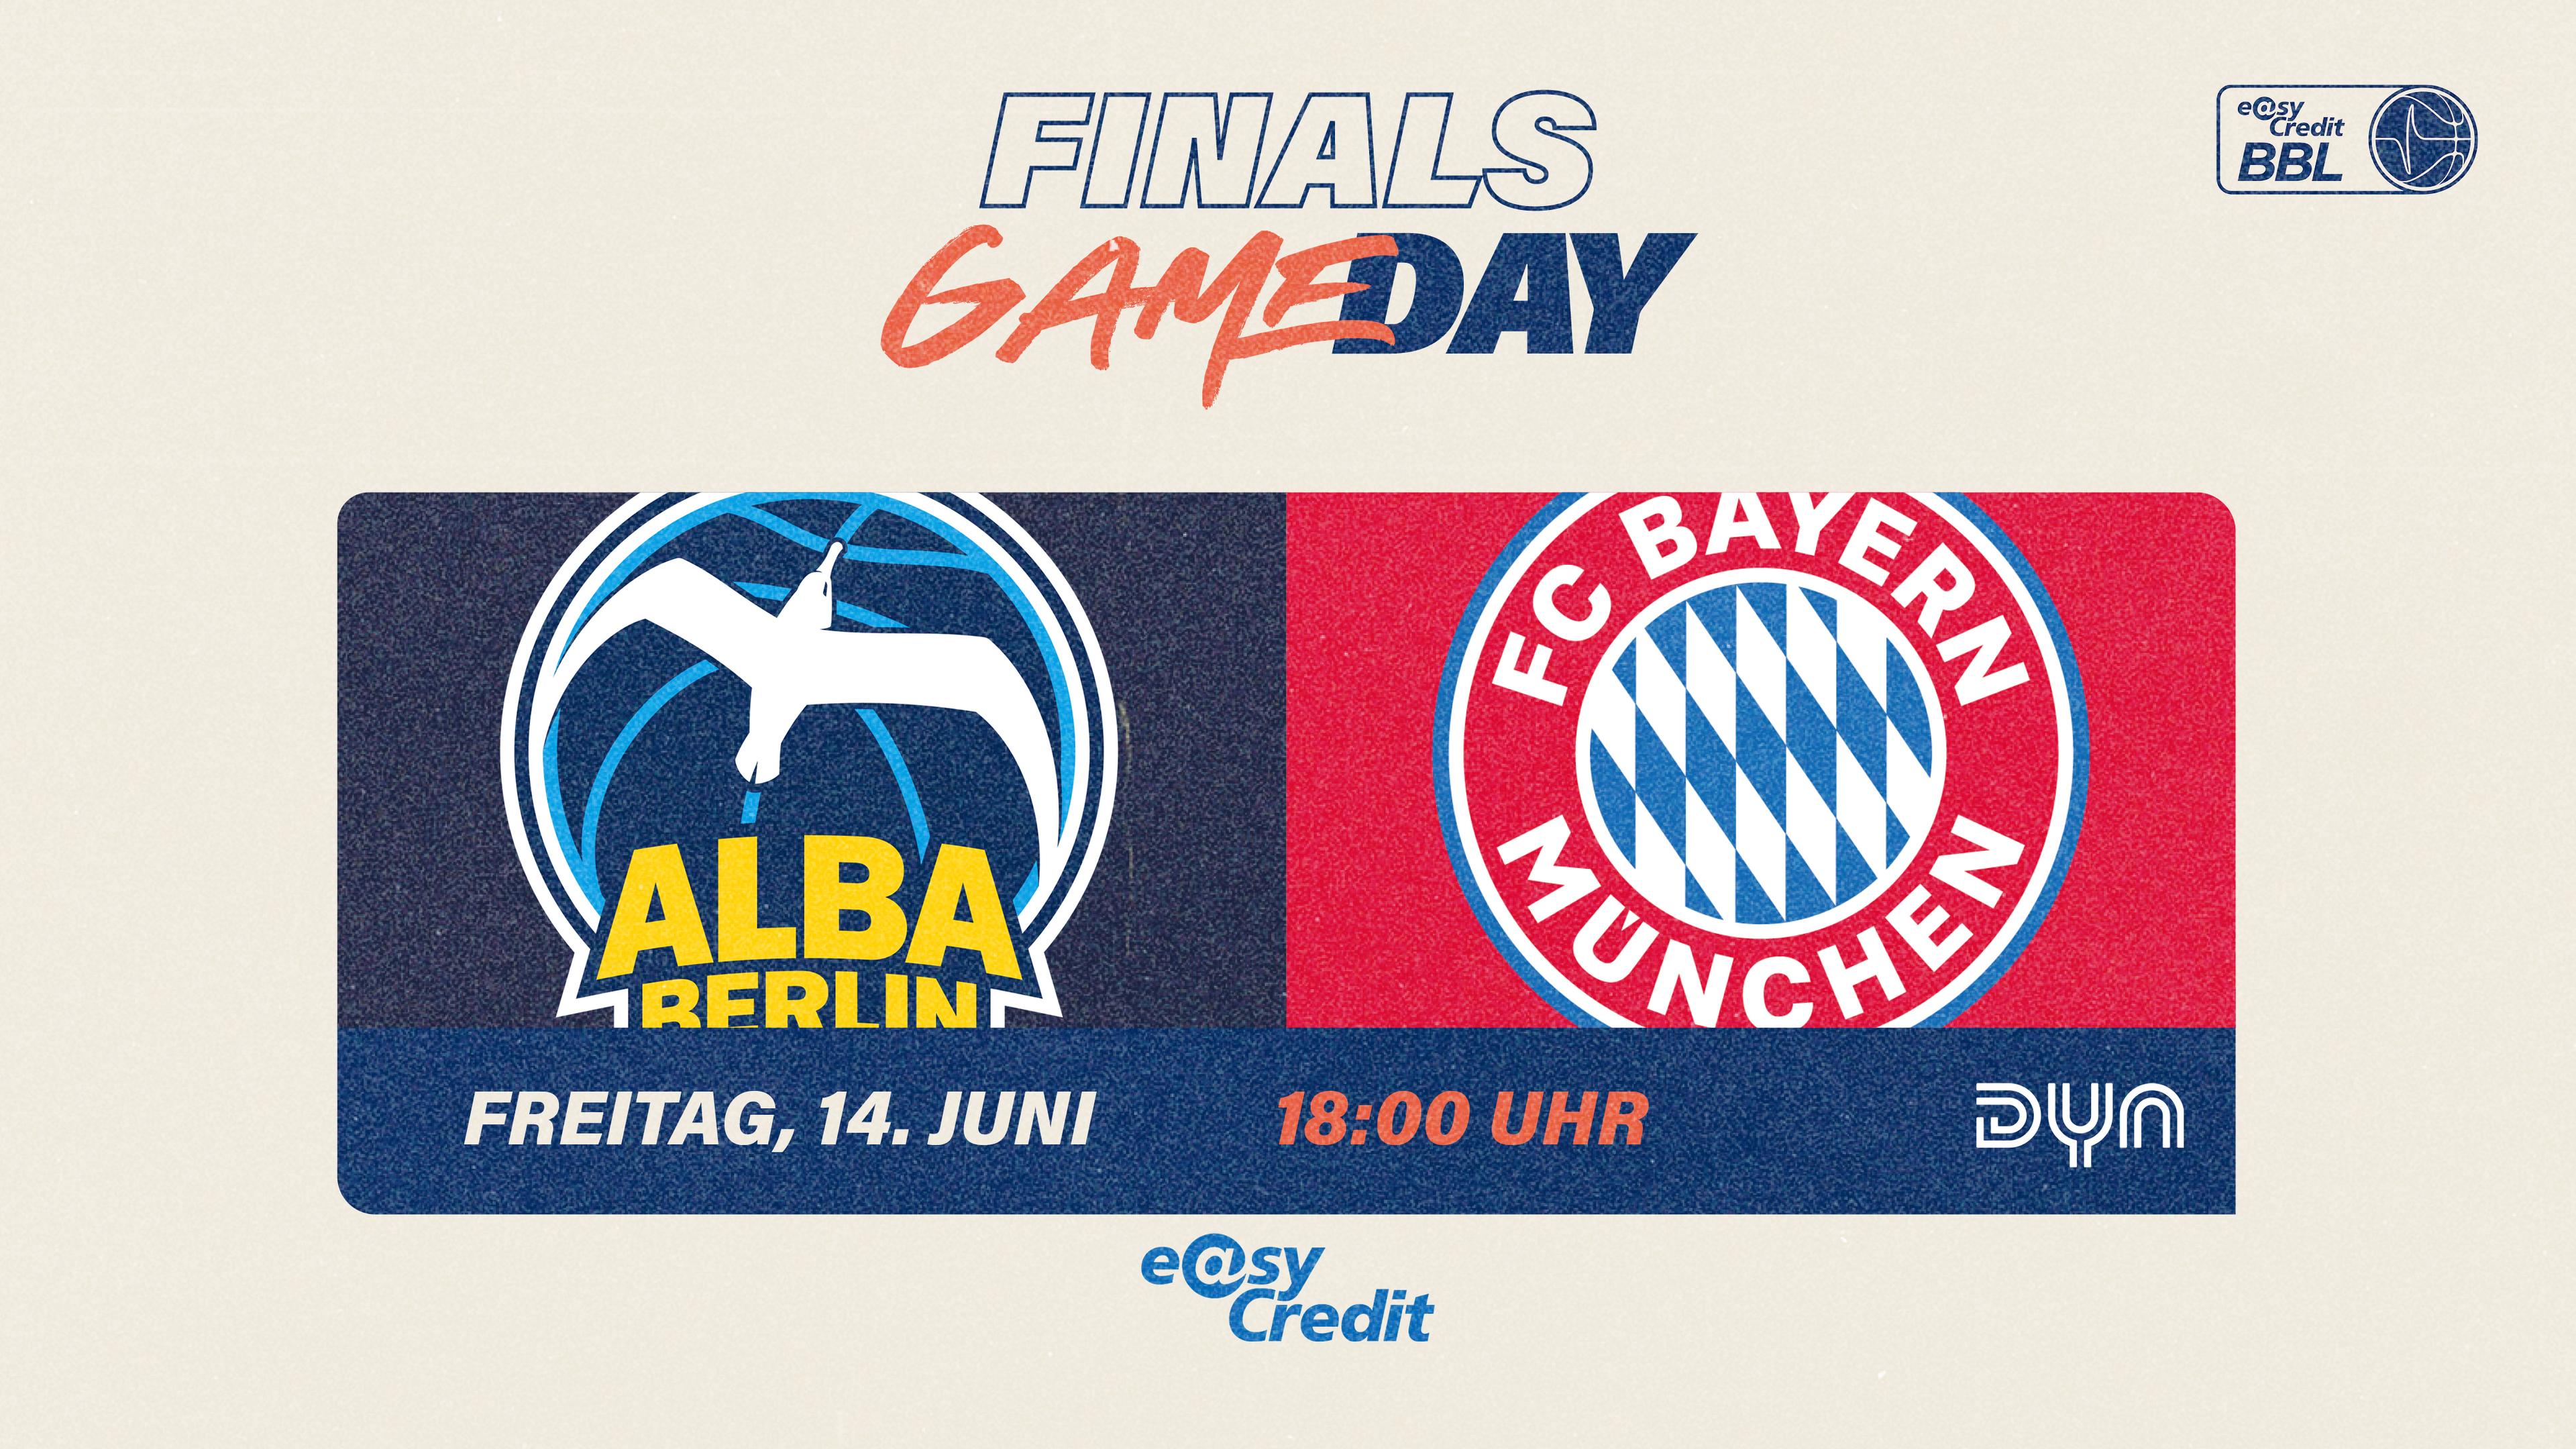 Bayern München hat sich am Mittwoch mit einem 67:63-Sieg in Berlin nicht nur den am Montag von ALBA gestohlenen Heimvorteil in der Finalserie best-of-five umgehend zurückgeholt. Bei einer 2:1-Führung trennt die Münchener jetzt nur noch ein Sieg vom Gewinn der Meisterschaft – sie haben sozusagen am Freitag drei Stunden vor der Eröffnung der Fußball-EM den Matchball im Basketball-Finale. Für die Bayern wäre der Meistertitel nach 1954, 1955, 2014, 2918 und 2019 der sechste ihrer Vereinsgeschichte. ALBA kann mit einem Sieg ein fünftes Finalspiel erzwingen, das dann am Sonntag in München endgültig über den Titel entscheiden würde.